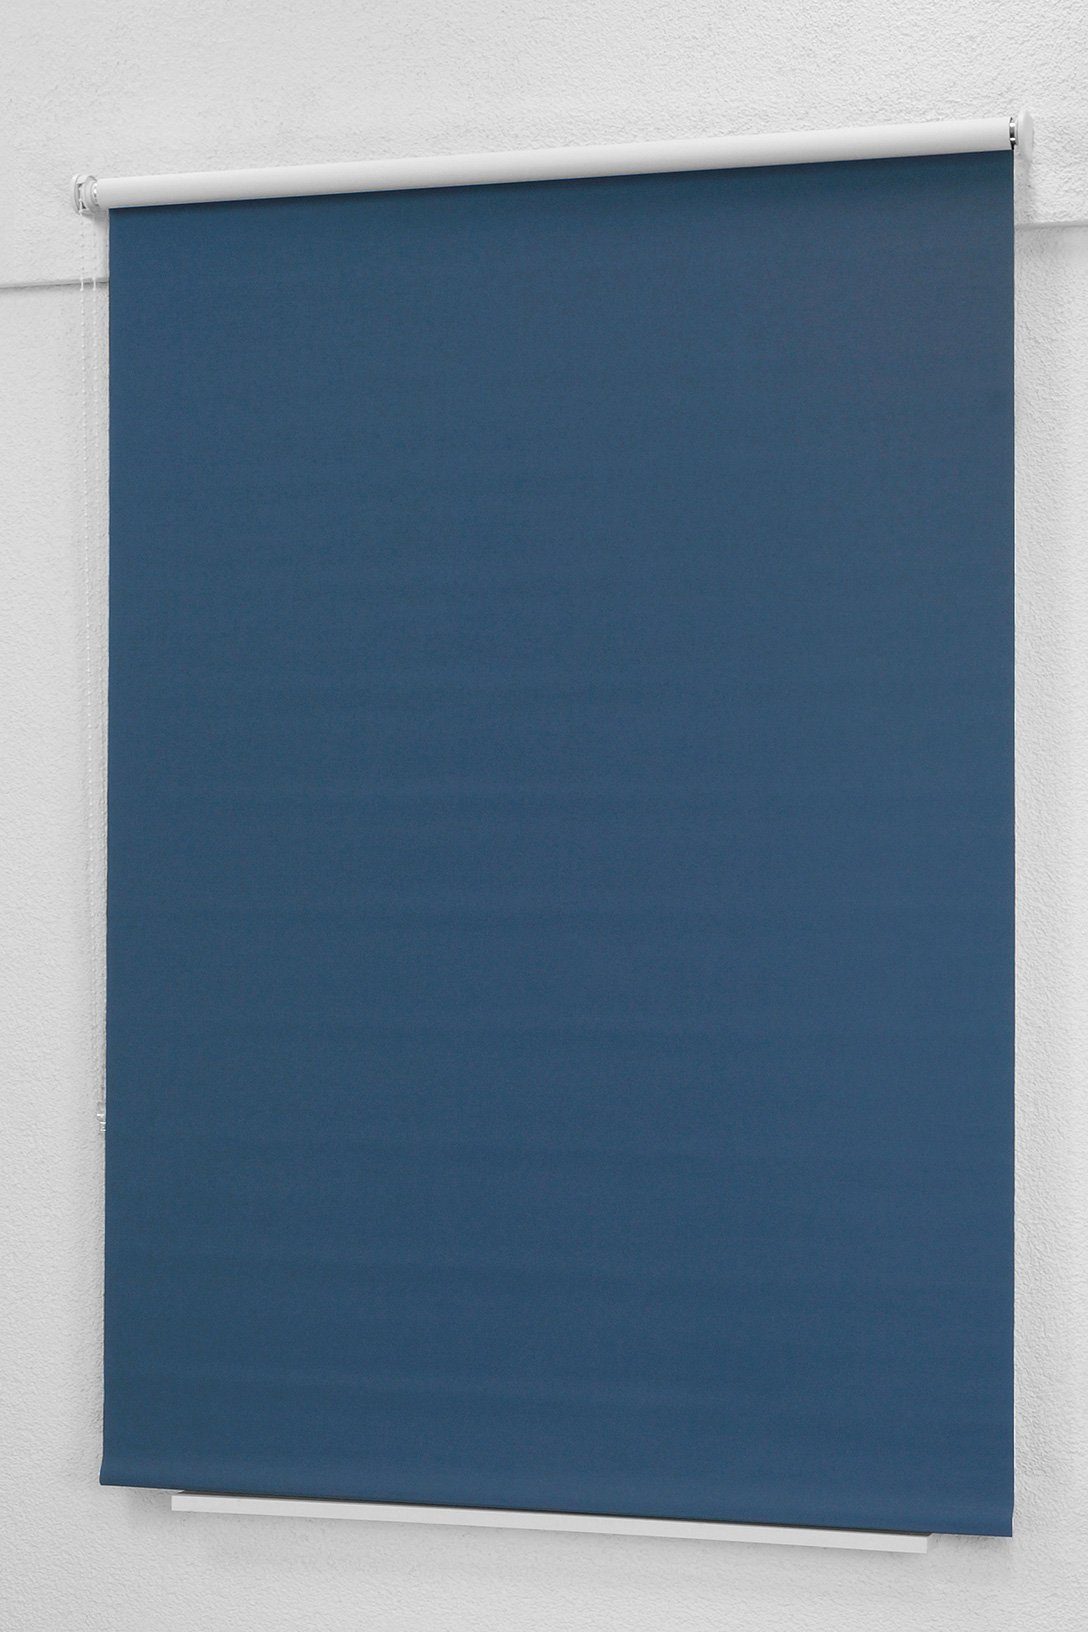 190x43cm Verdunklungsrollo abdunkelnd, Qualitätsrollo violettblau LYSEL®, abdunkelnd, HxB